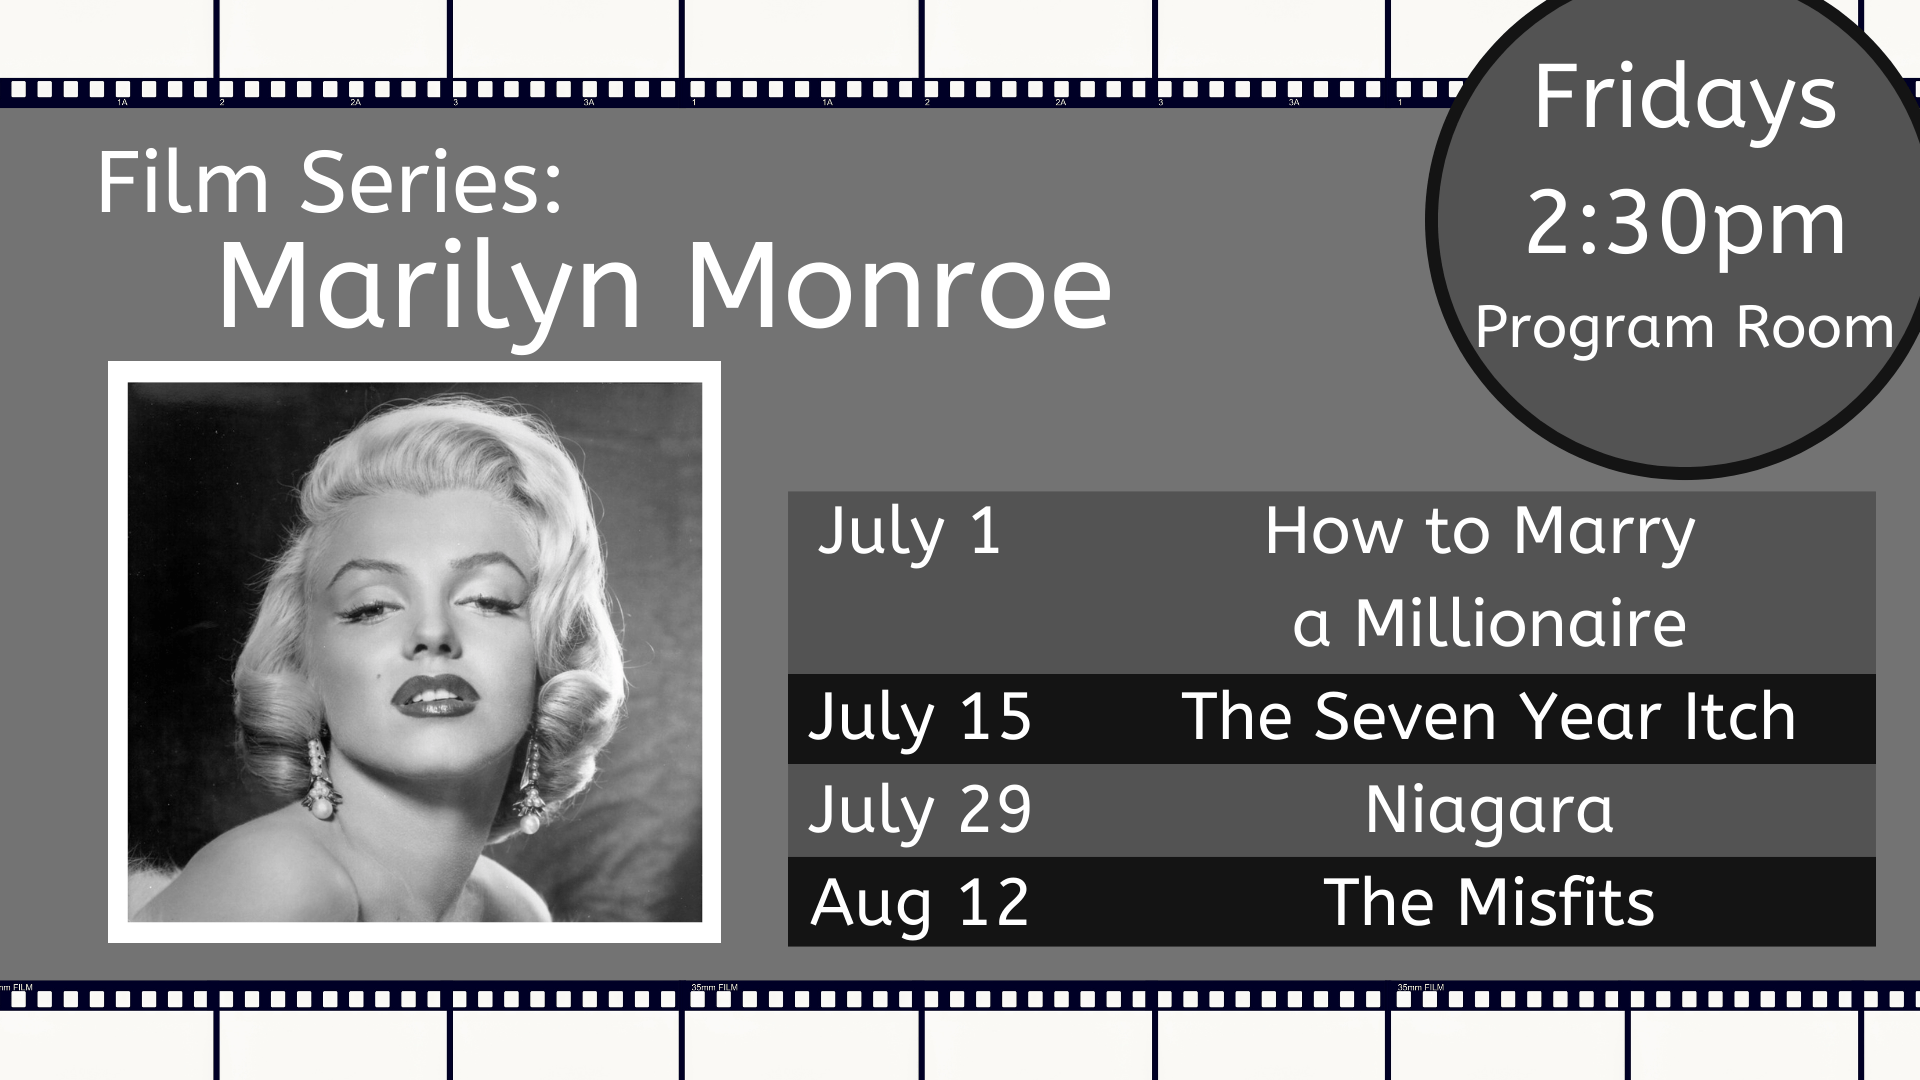 Film Series: Marilyn Monroe